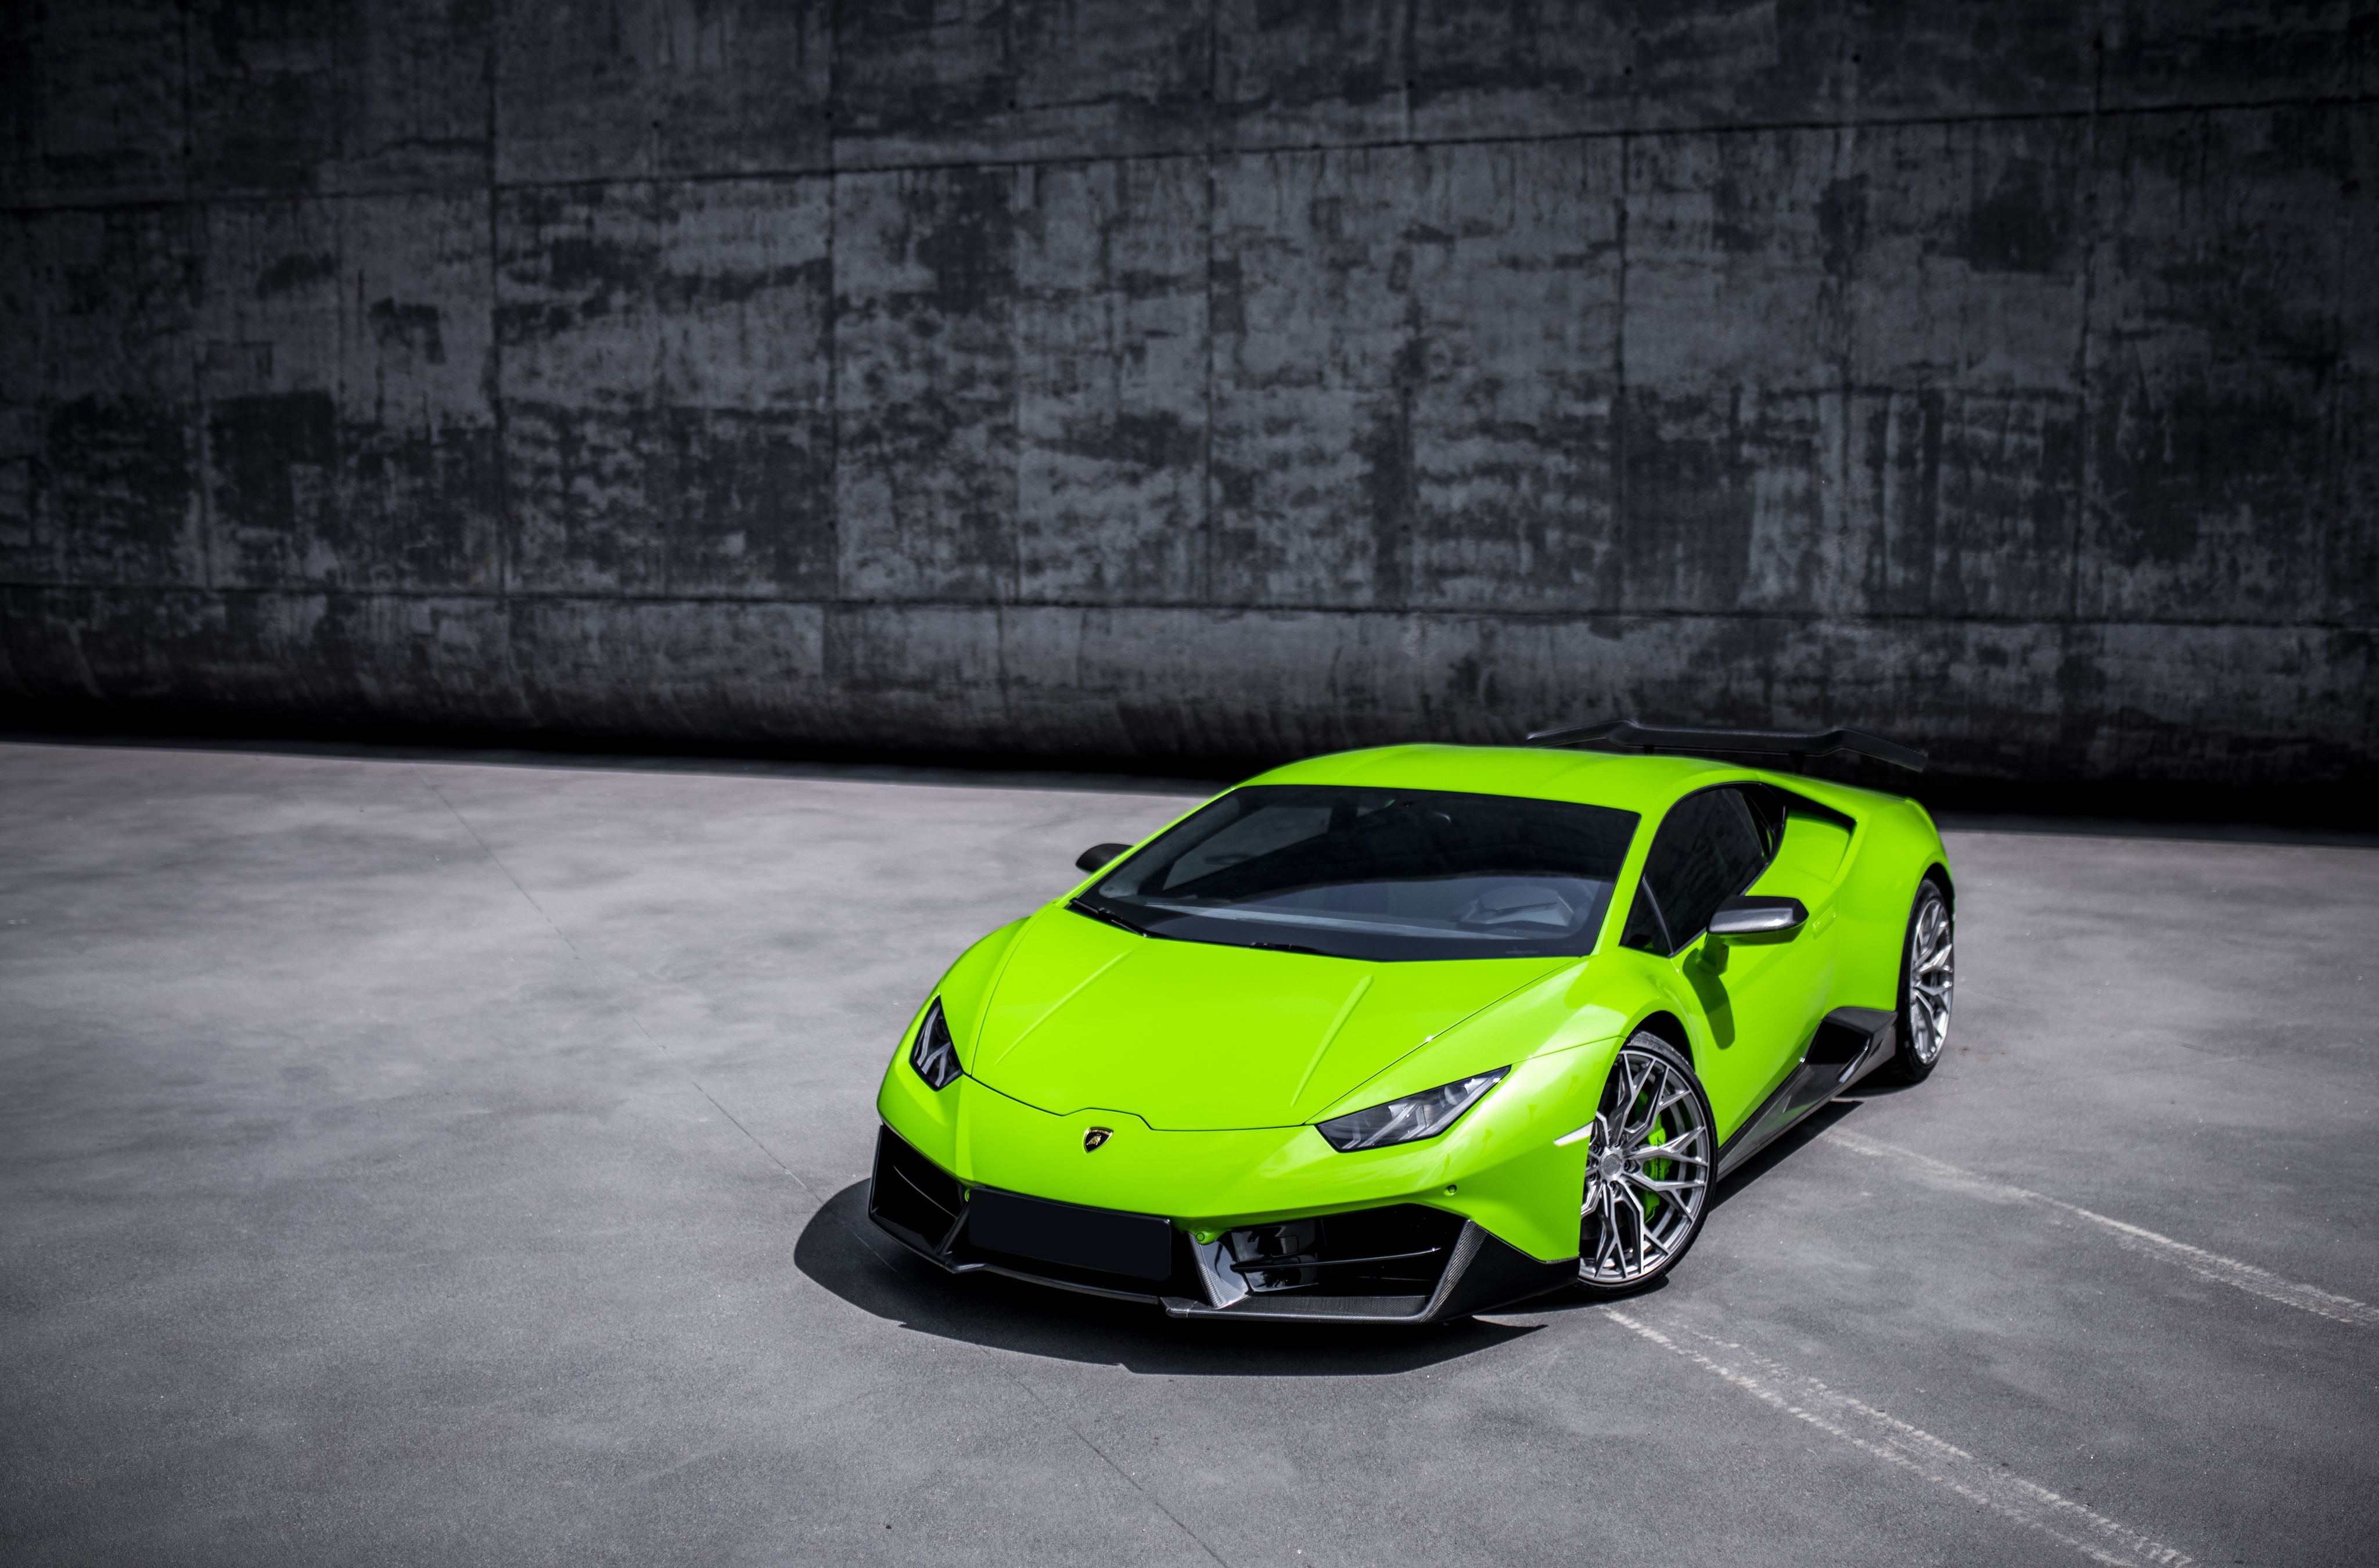 Với tốc độ lên tới 325 km/h và động cơ V10 5.2L, Lamborghini Huracán là một trong những siêu xe đắt giá và sang trọng nhất trên thế giới. Chiếc xe đẹp mê hoặc với thiết kế đầy đam mê và tính thể thao. Hãy xem hình ảnh Lamborghini Huracán để tận hưởng vẻ đẹp tuyệt vời của một siêu xe thể thao đẳng cấp.